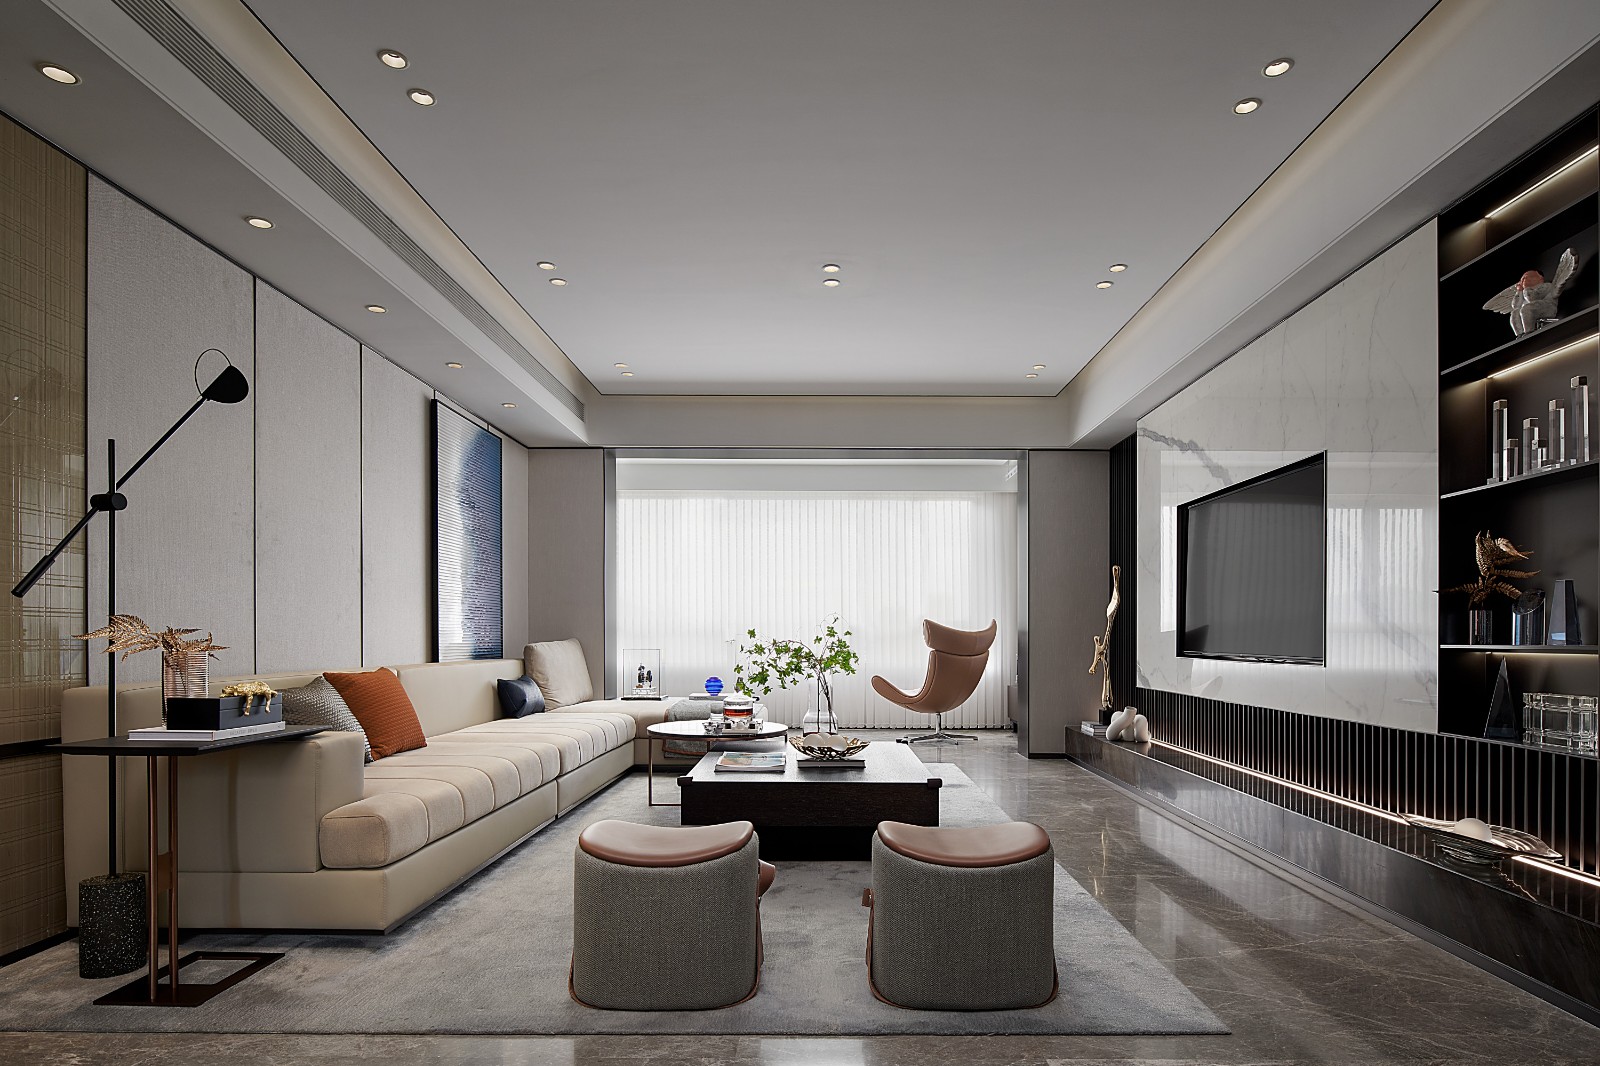 客厅背景墙与沙发配色契合,营造出整洁有序的视觉观感,客厅呈现出静谧